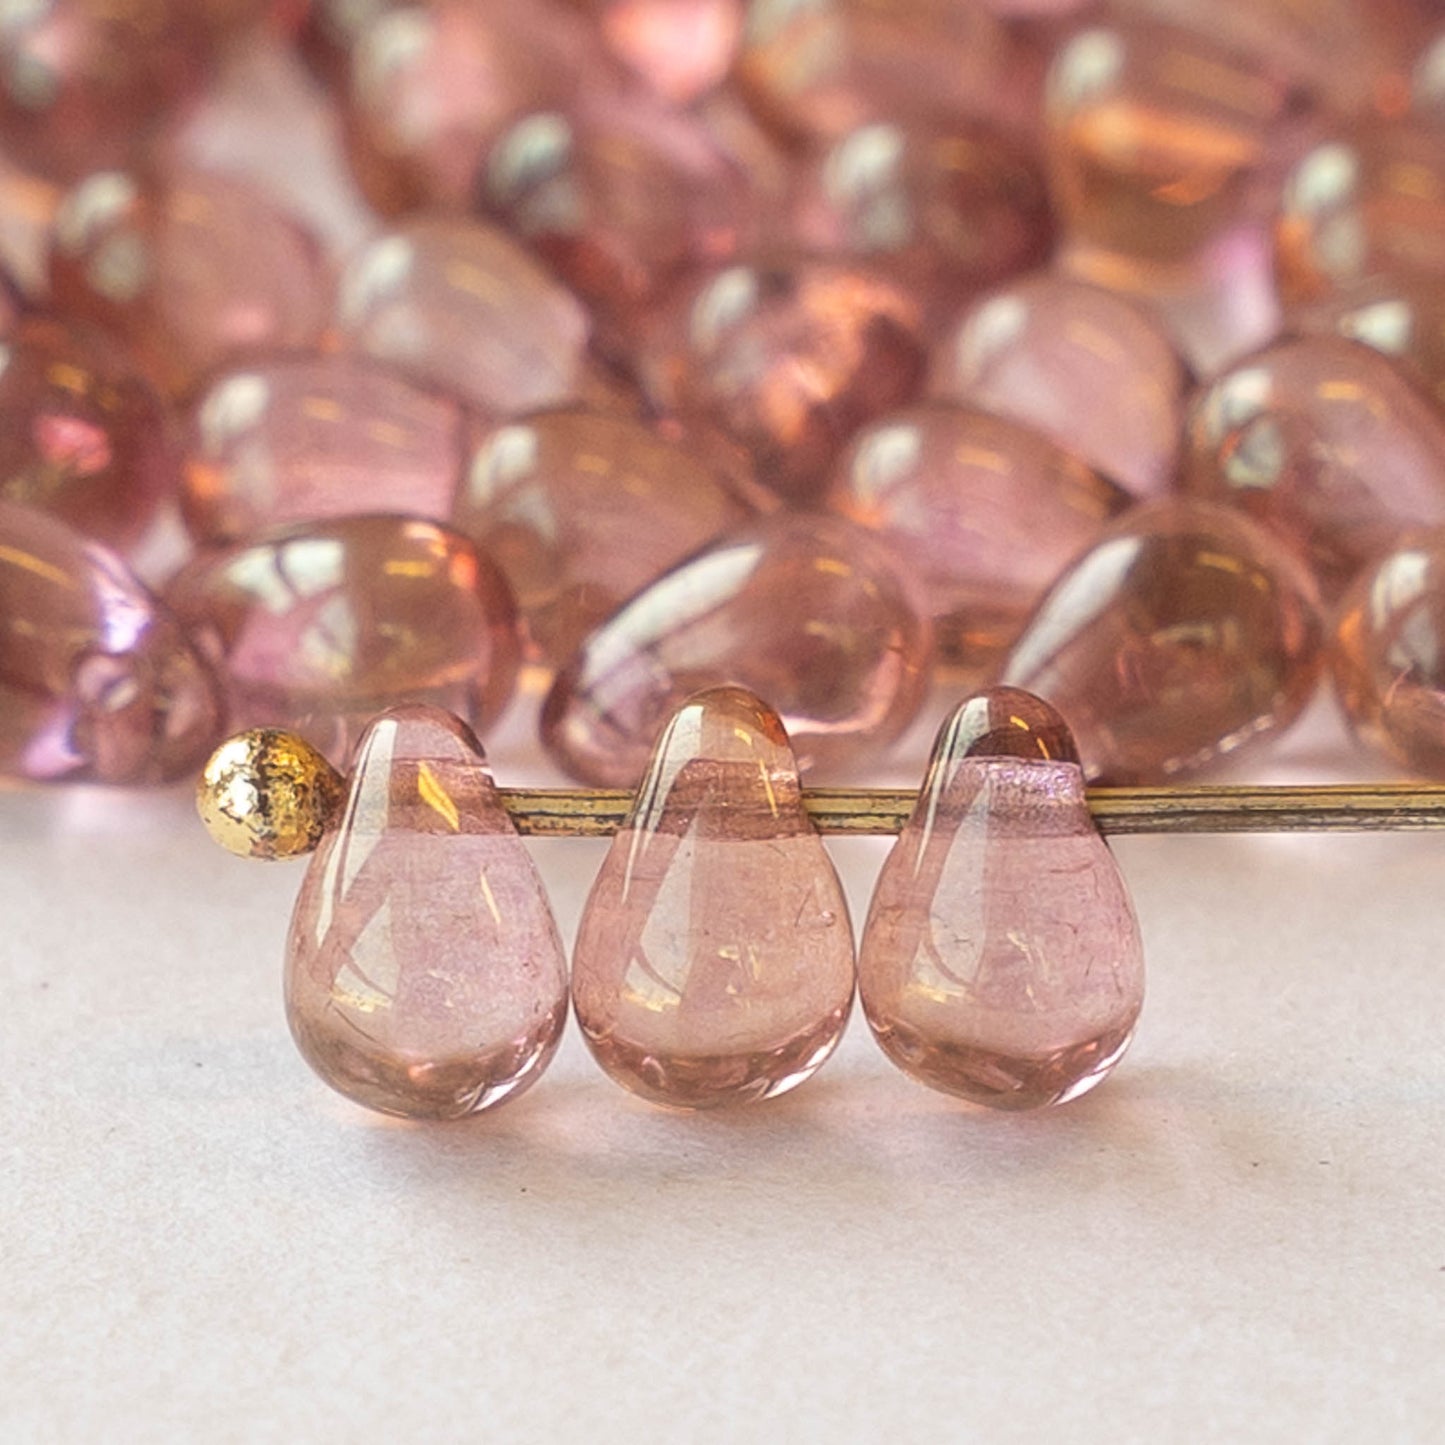 4x6mm Glass Teardrop Beads - Light Rose Gold - 100 Beads